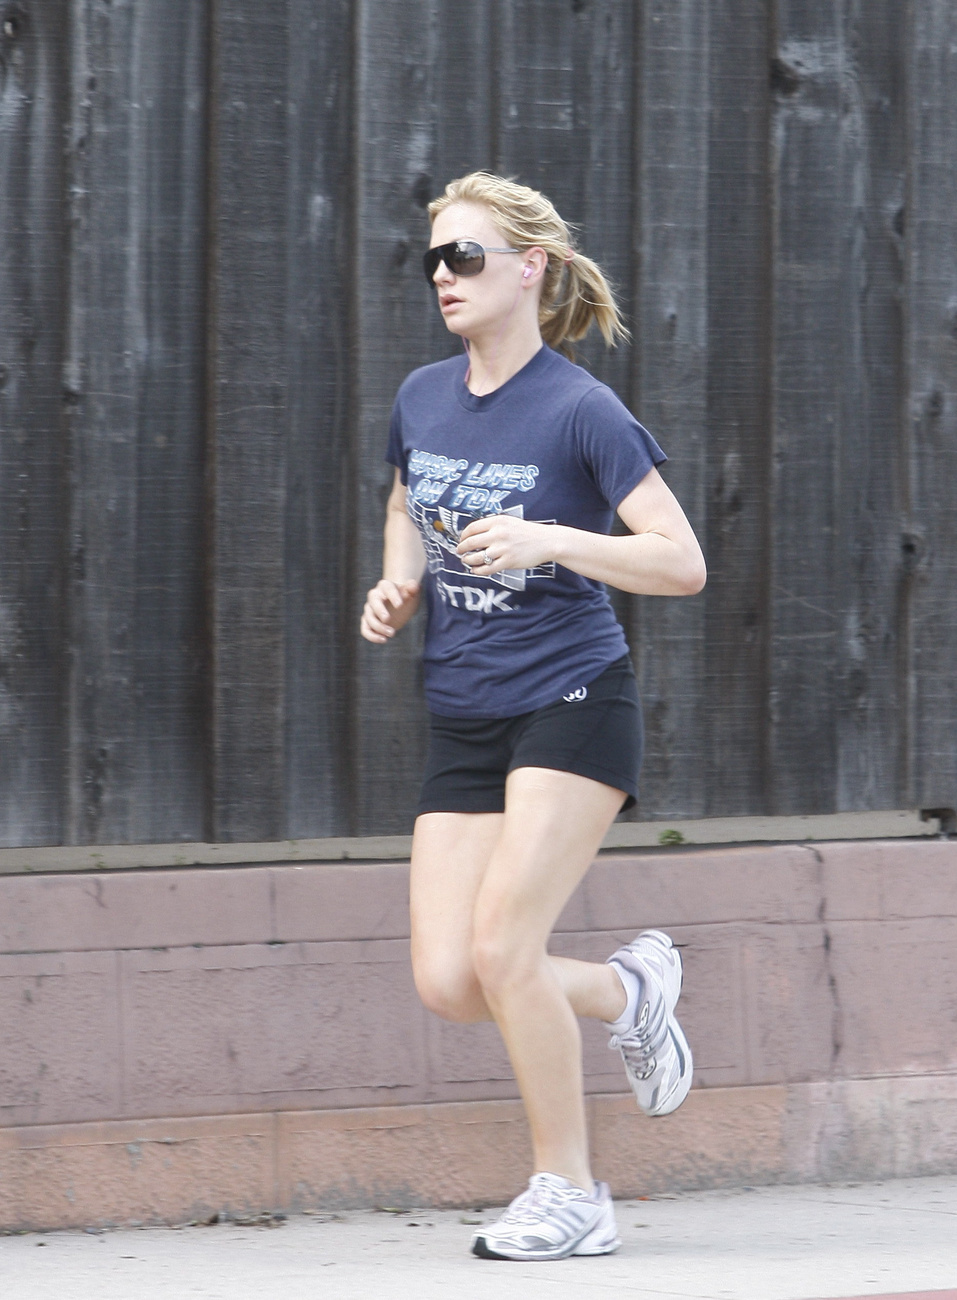 Reese Witherspoon nemcsak jógázik, hanem fut is